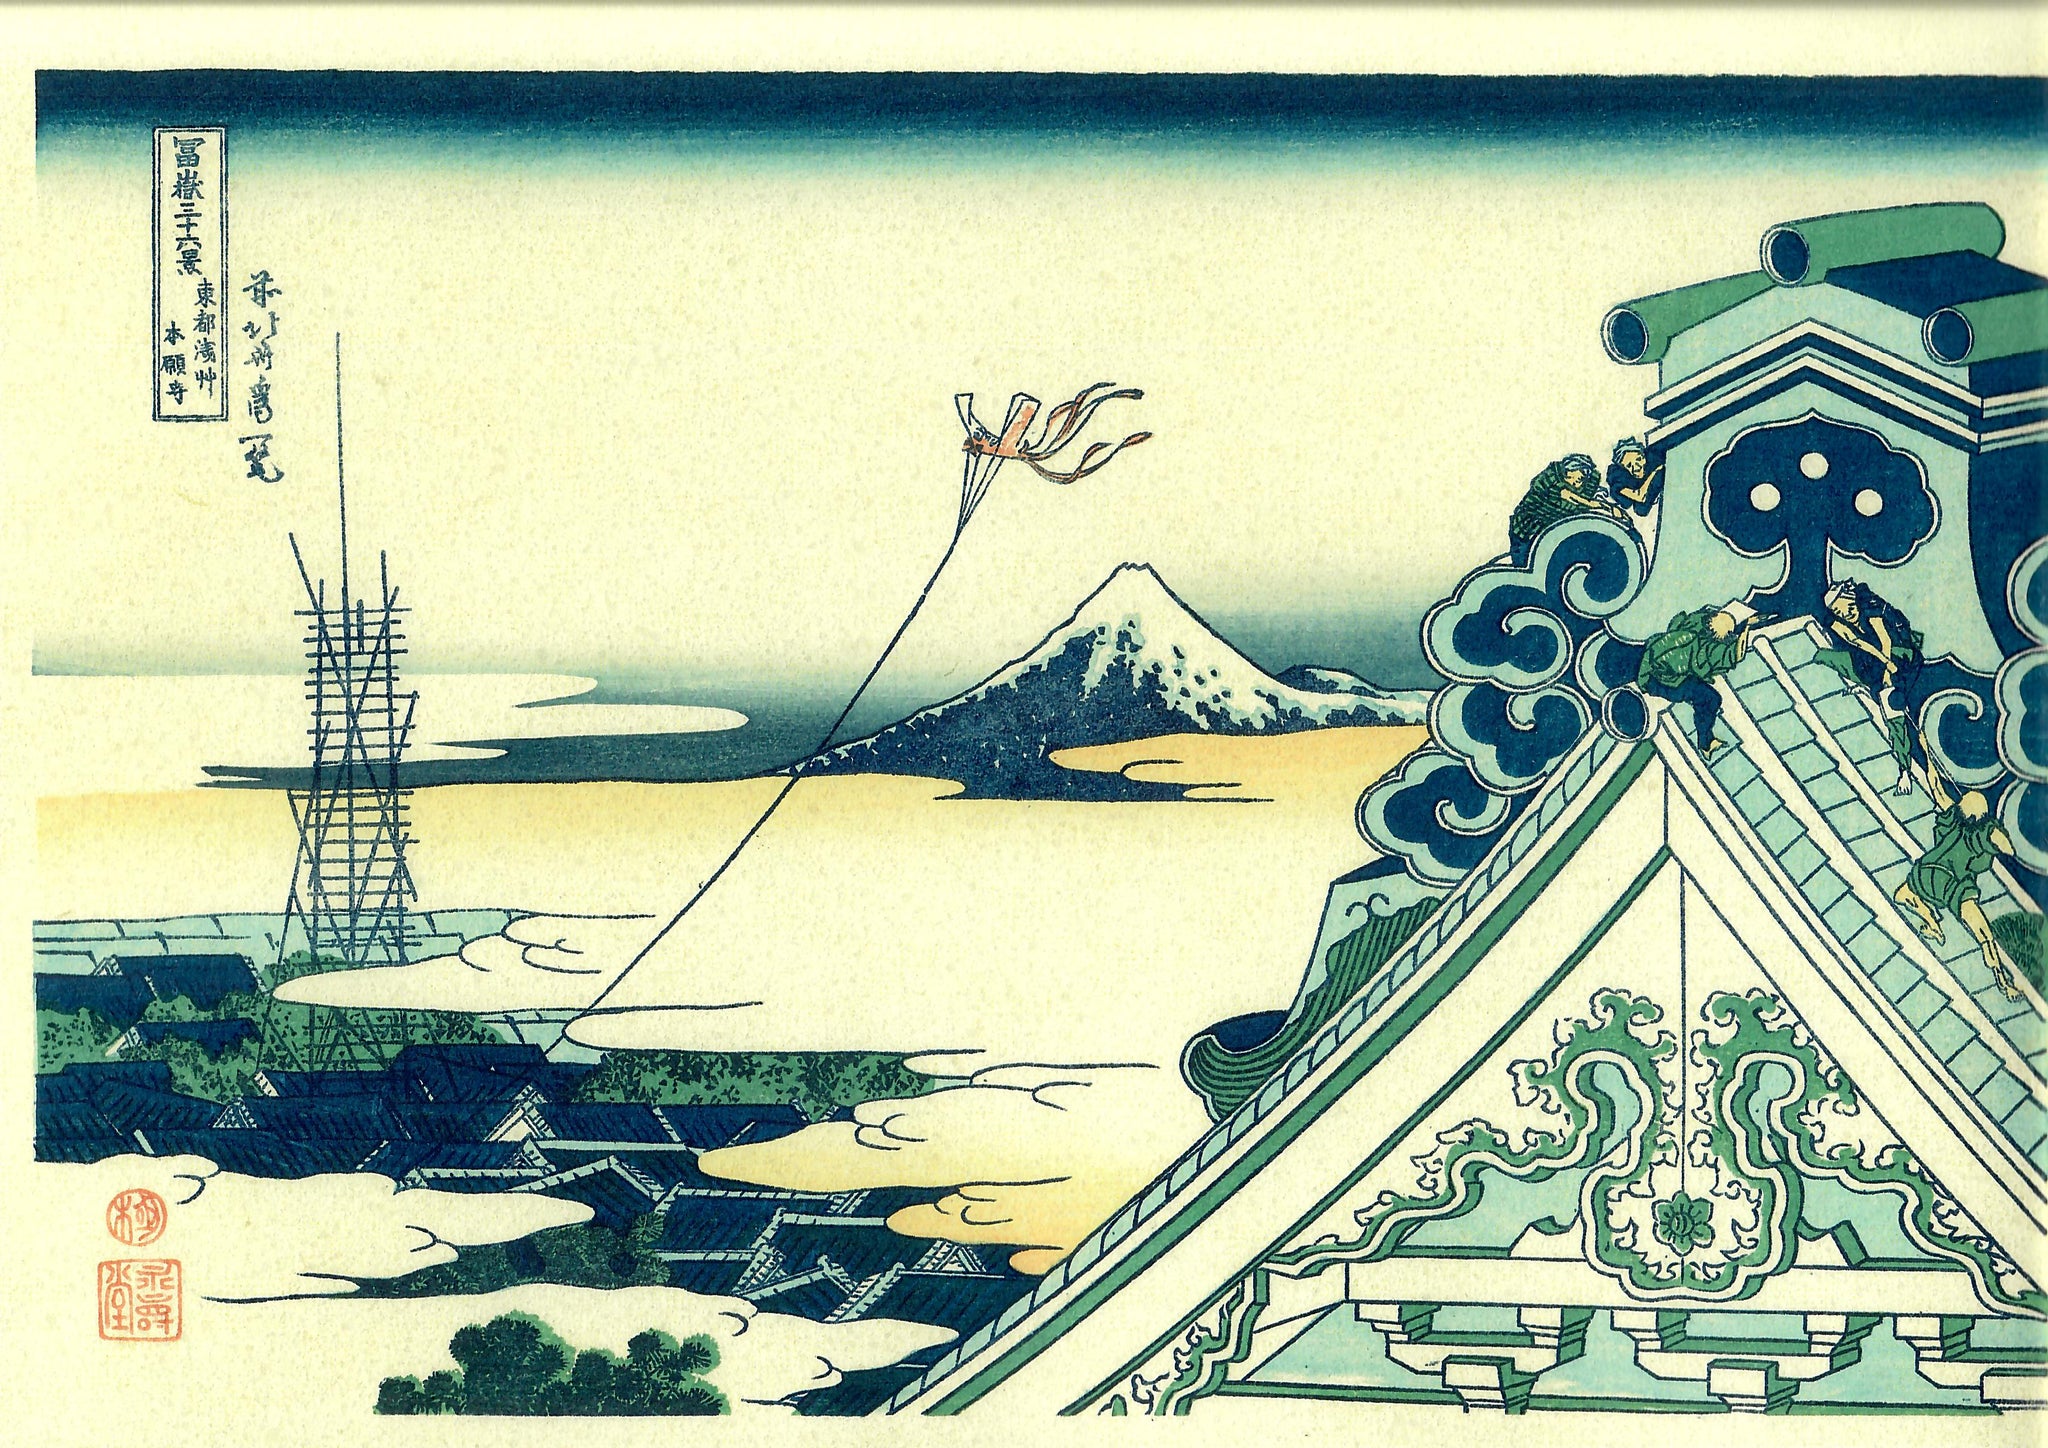 Hokusai "Honganji Temple"